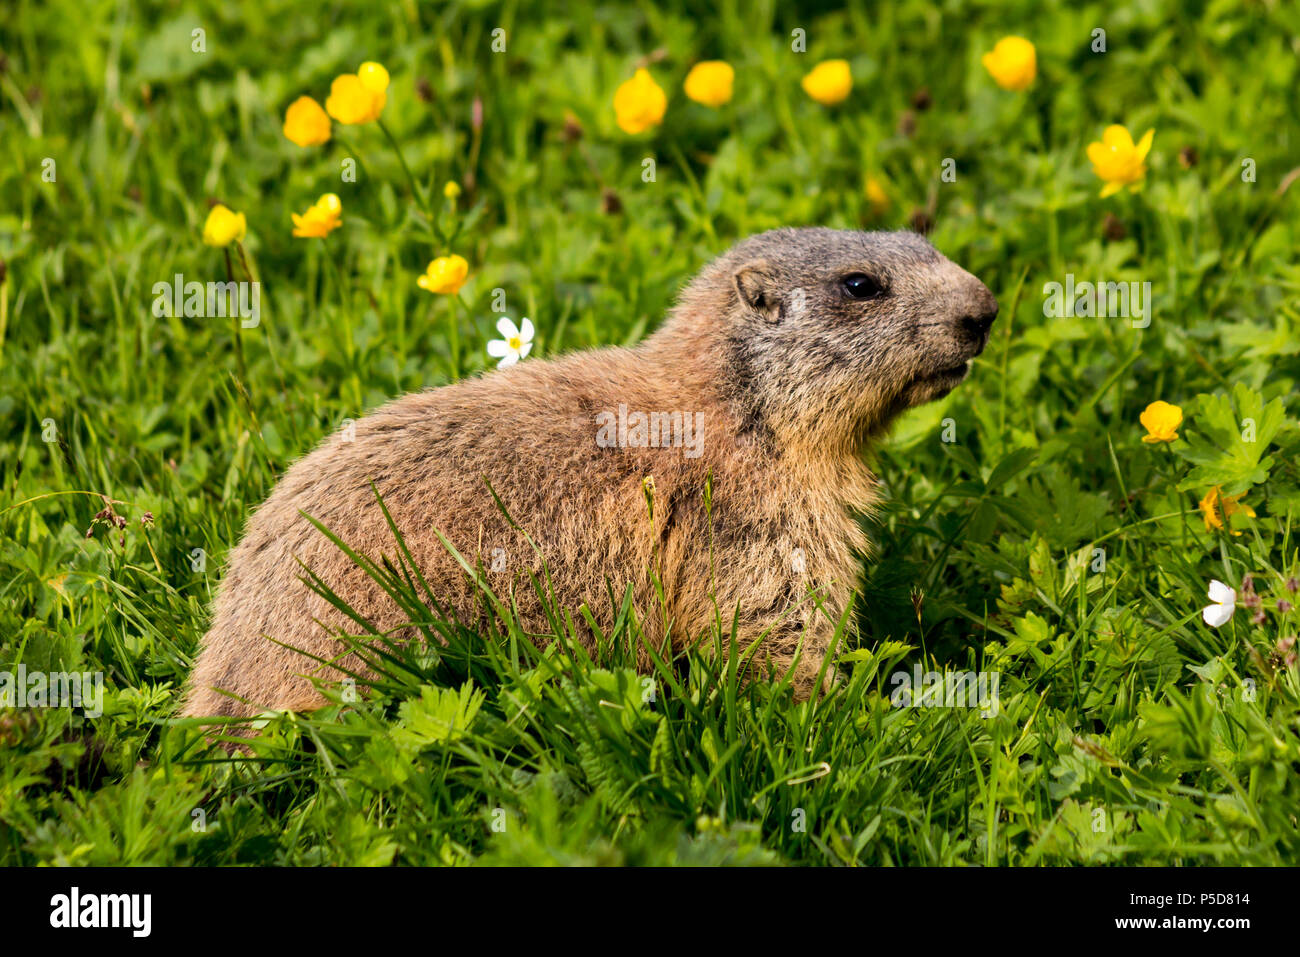 Carino alpine marmotta (Marmota marmota) alimentazione sul pascolo di fiori delle Alpi in Europa (Liechtenstein) Foto Stock